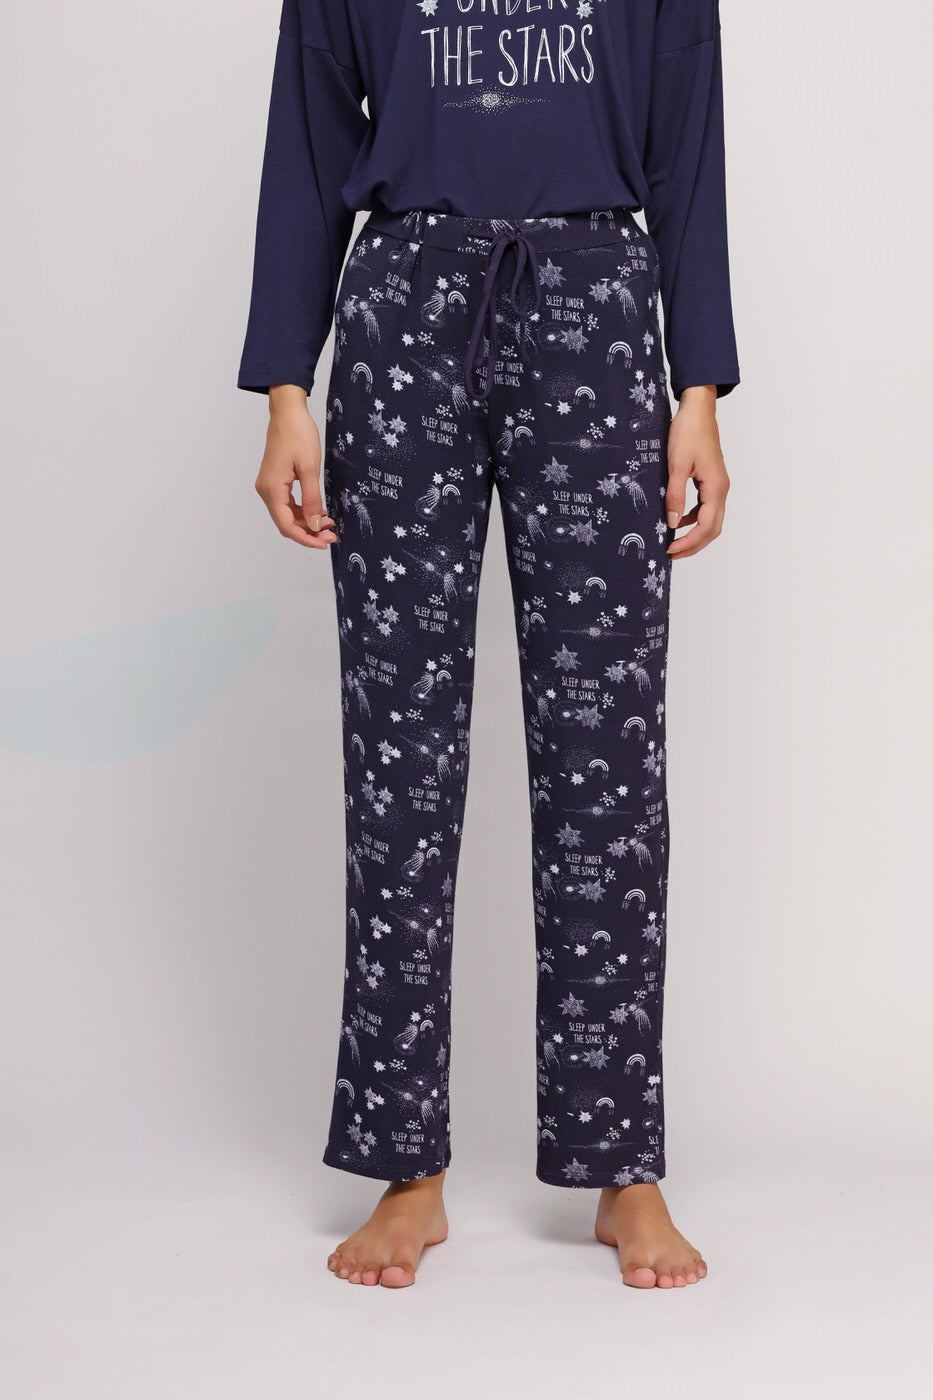 Starry Night Pajamas